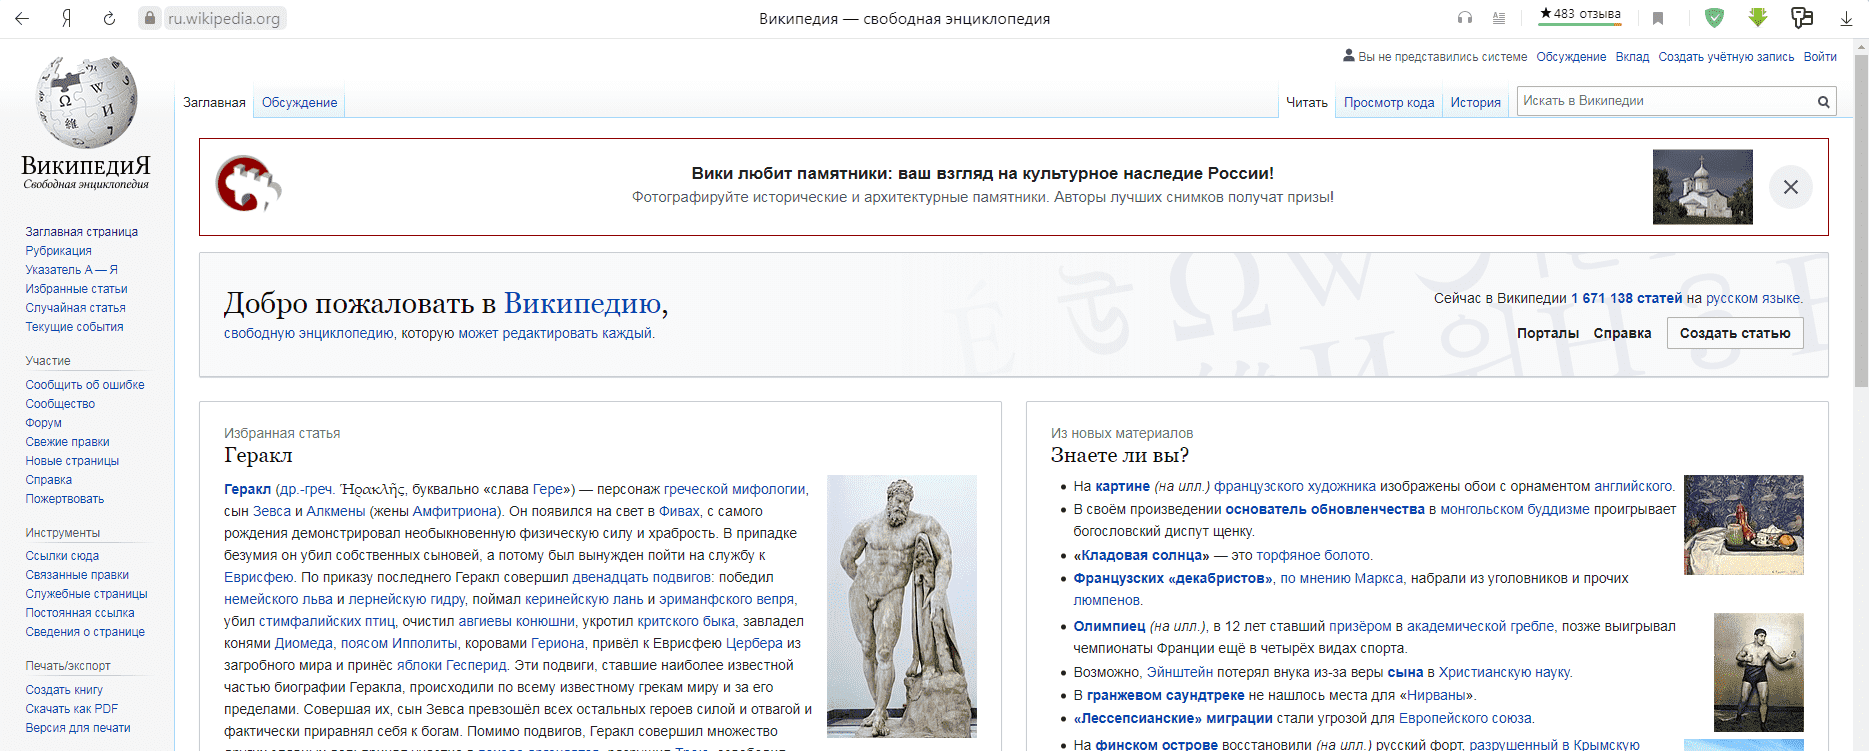 Главная страница сайта Викиепедия